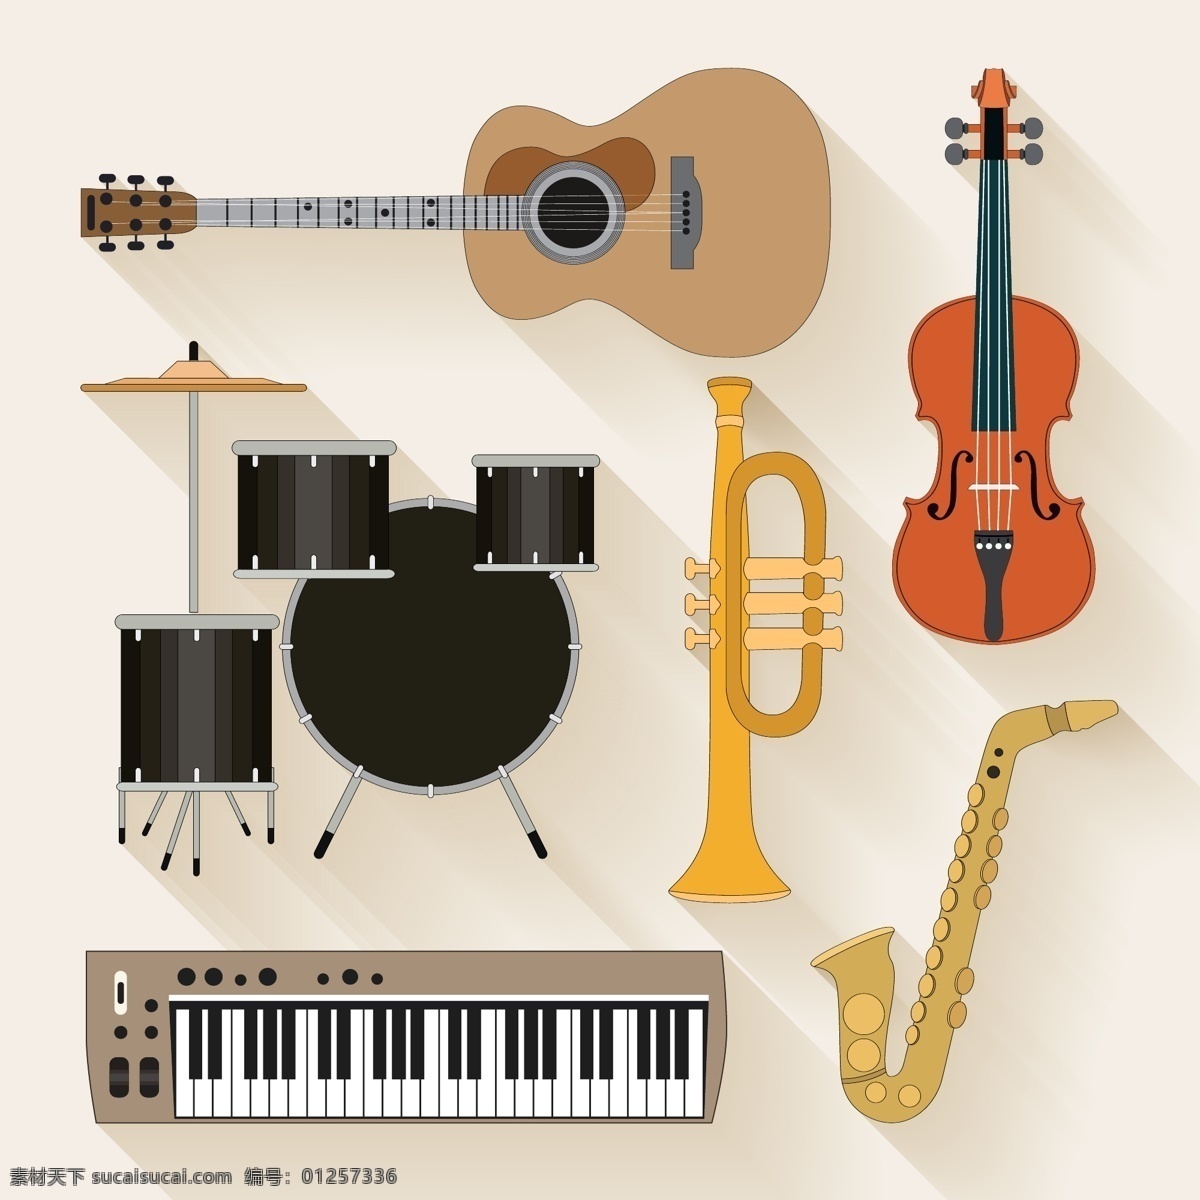 乐器图片 乐器 音乐家 演奏 专业 音乐行业 音乐领域 演奏音乐 乐团 职业 手绘 插图 表演